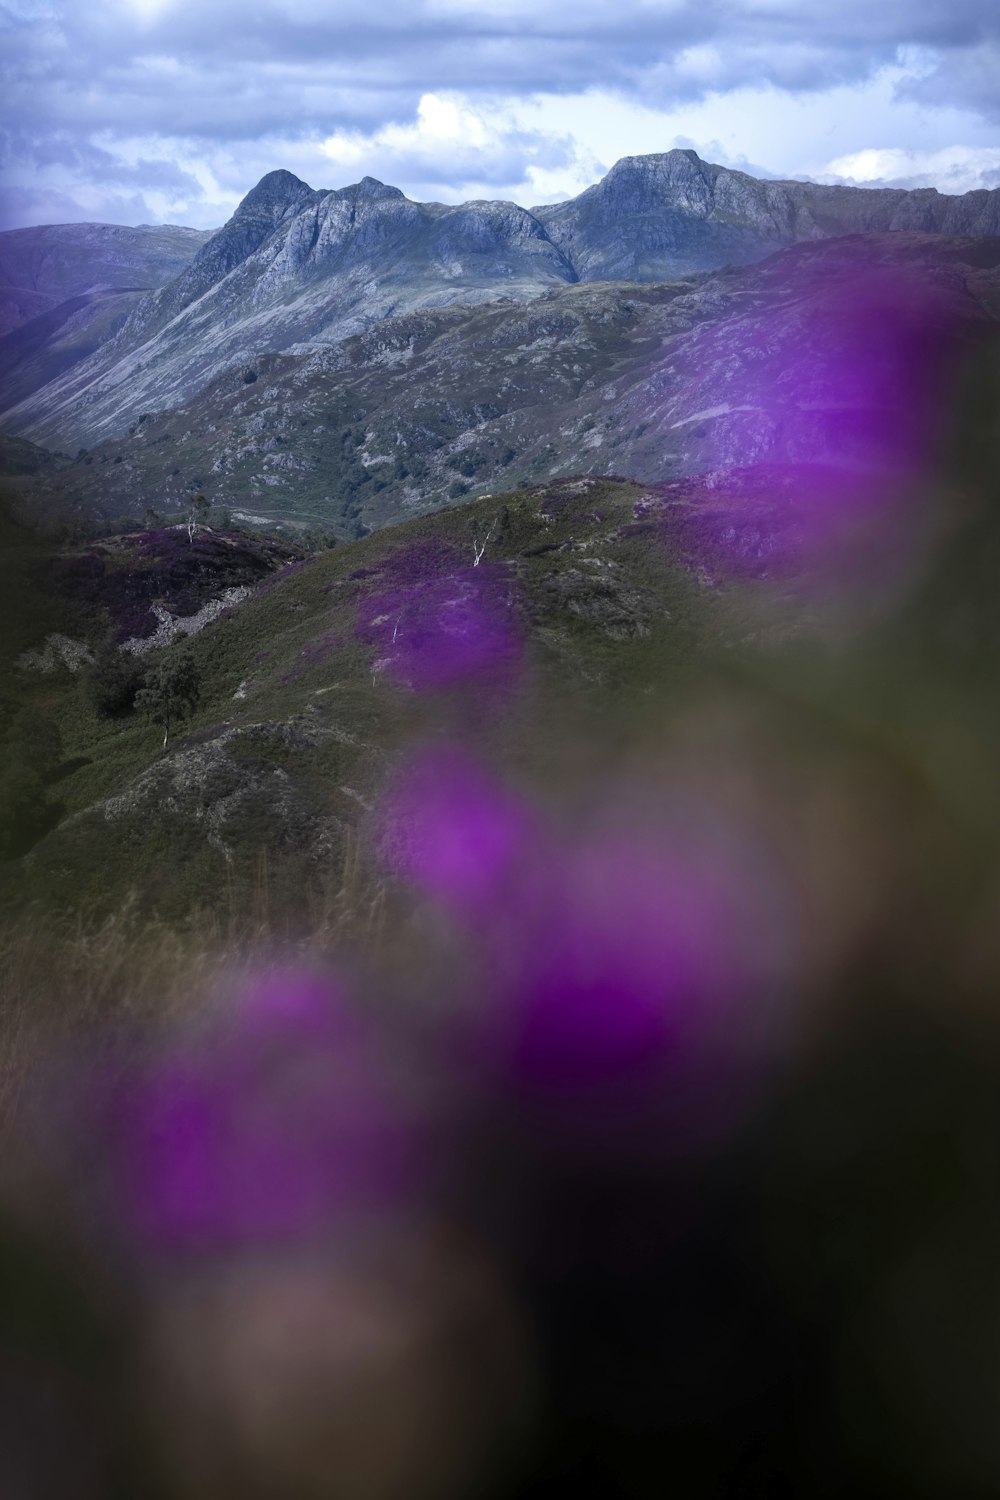 Un fiore viola in primo piano con una montagna sullo sfondo